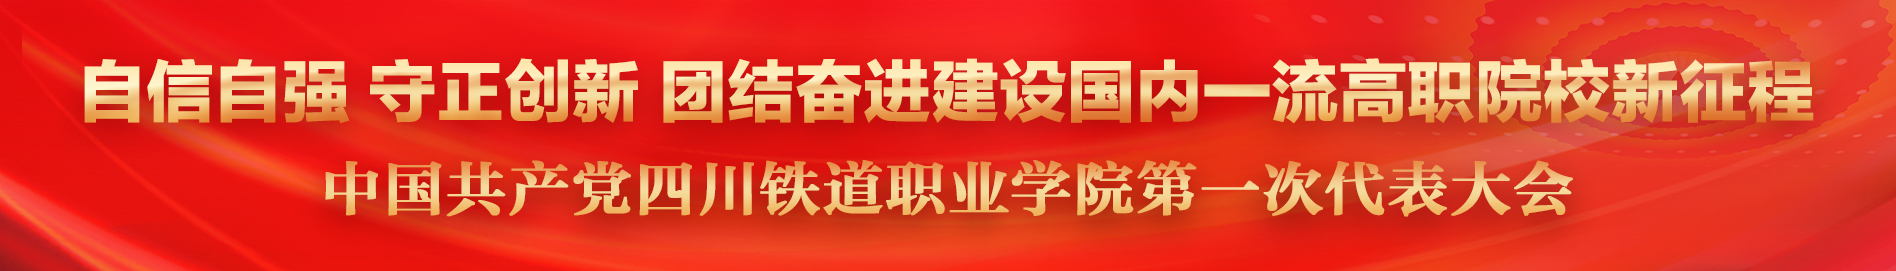 中国共产党jdb电子官网第一次代表大会